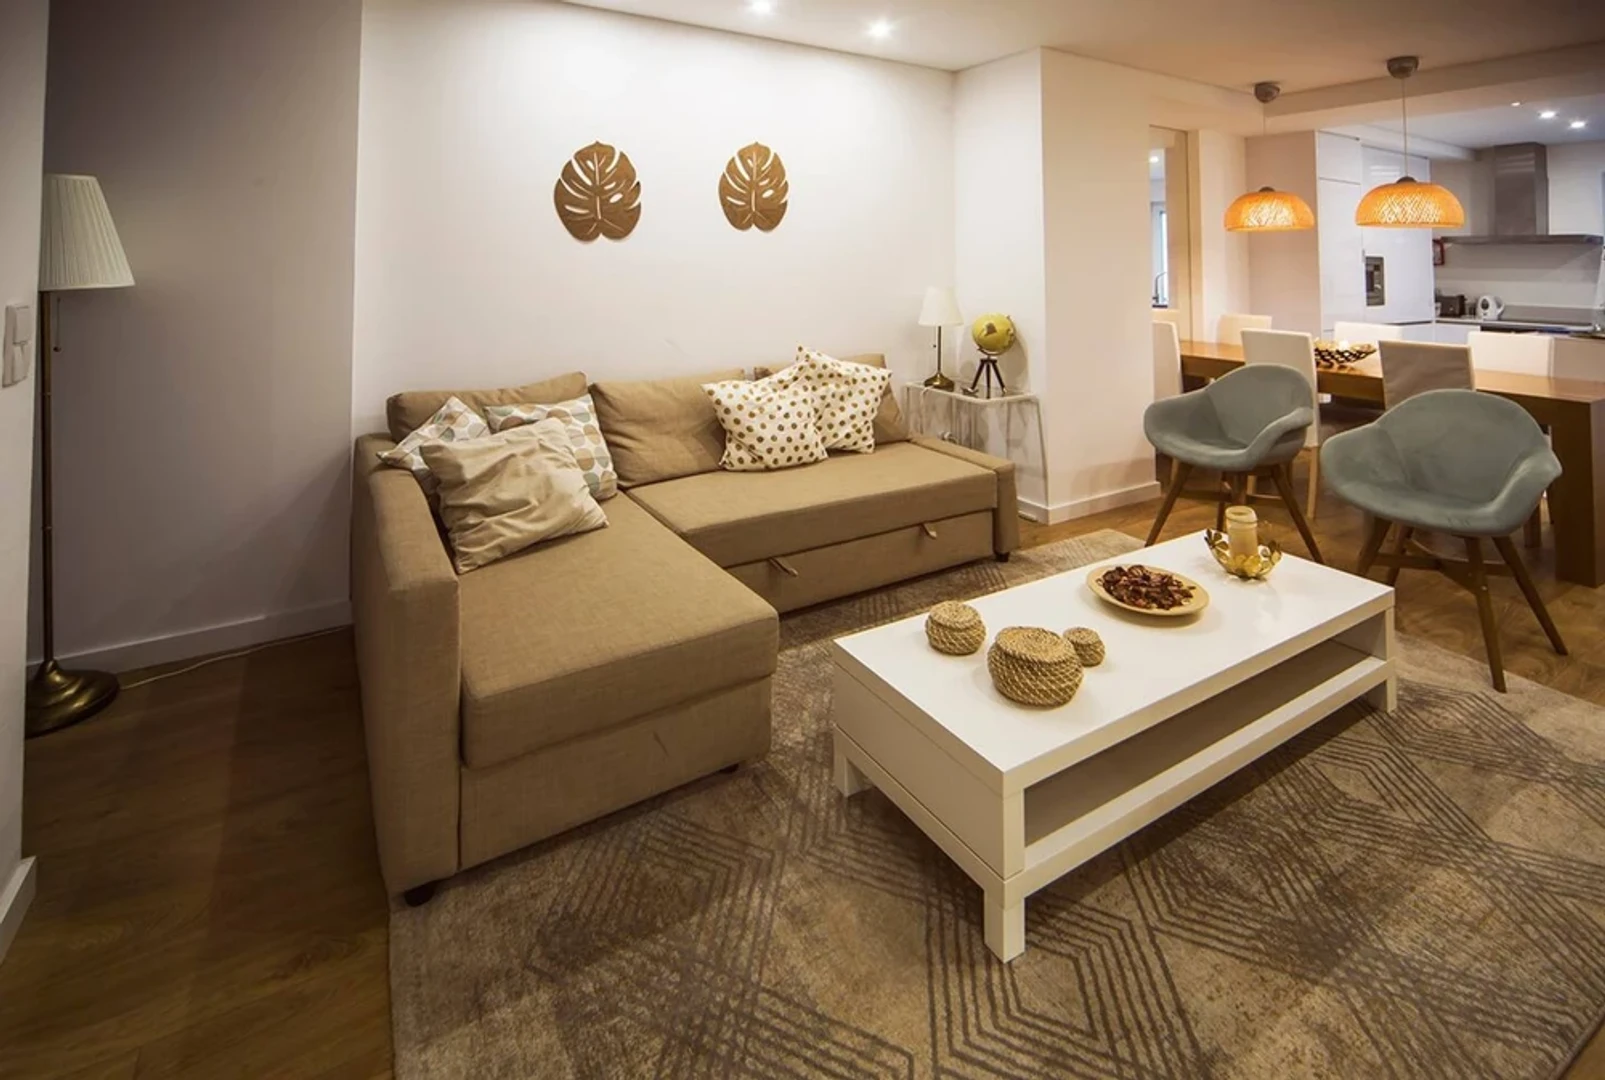 Entire fully furnished flat in Braga